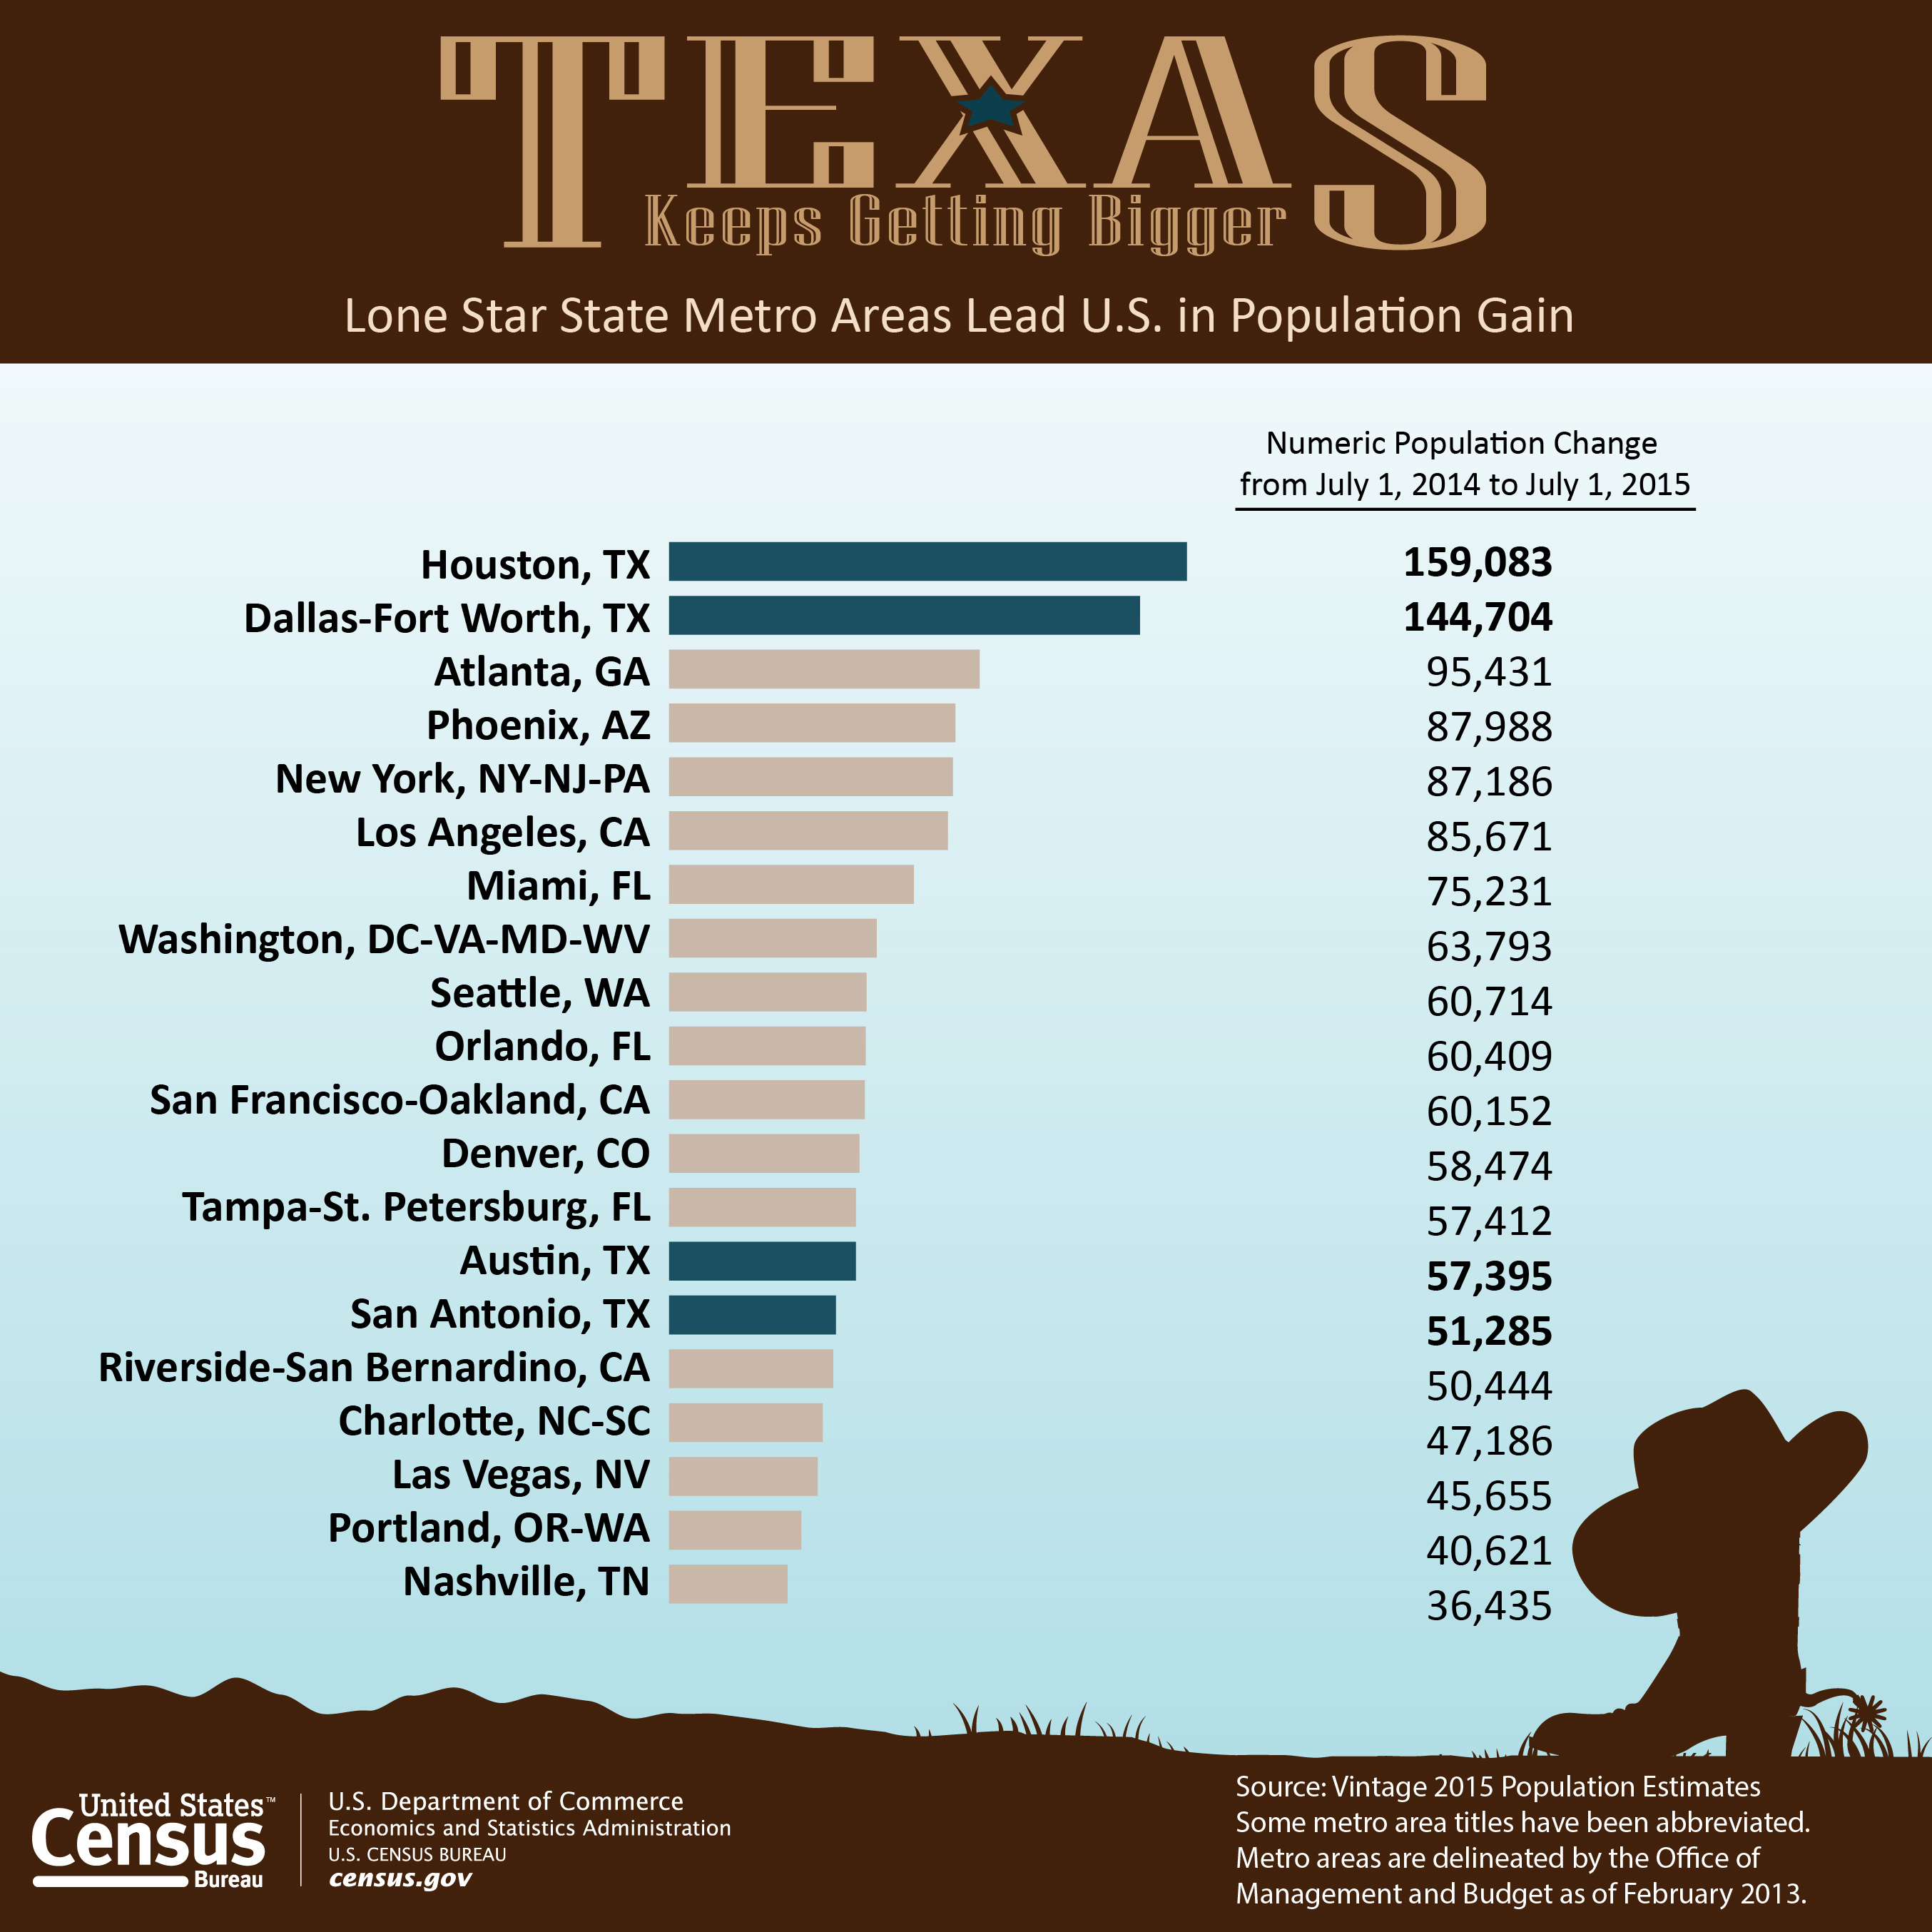 Estiman 400,000 personas más en cuatro áreas metropolitanas de Texas